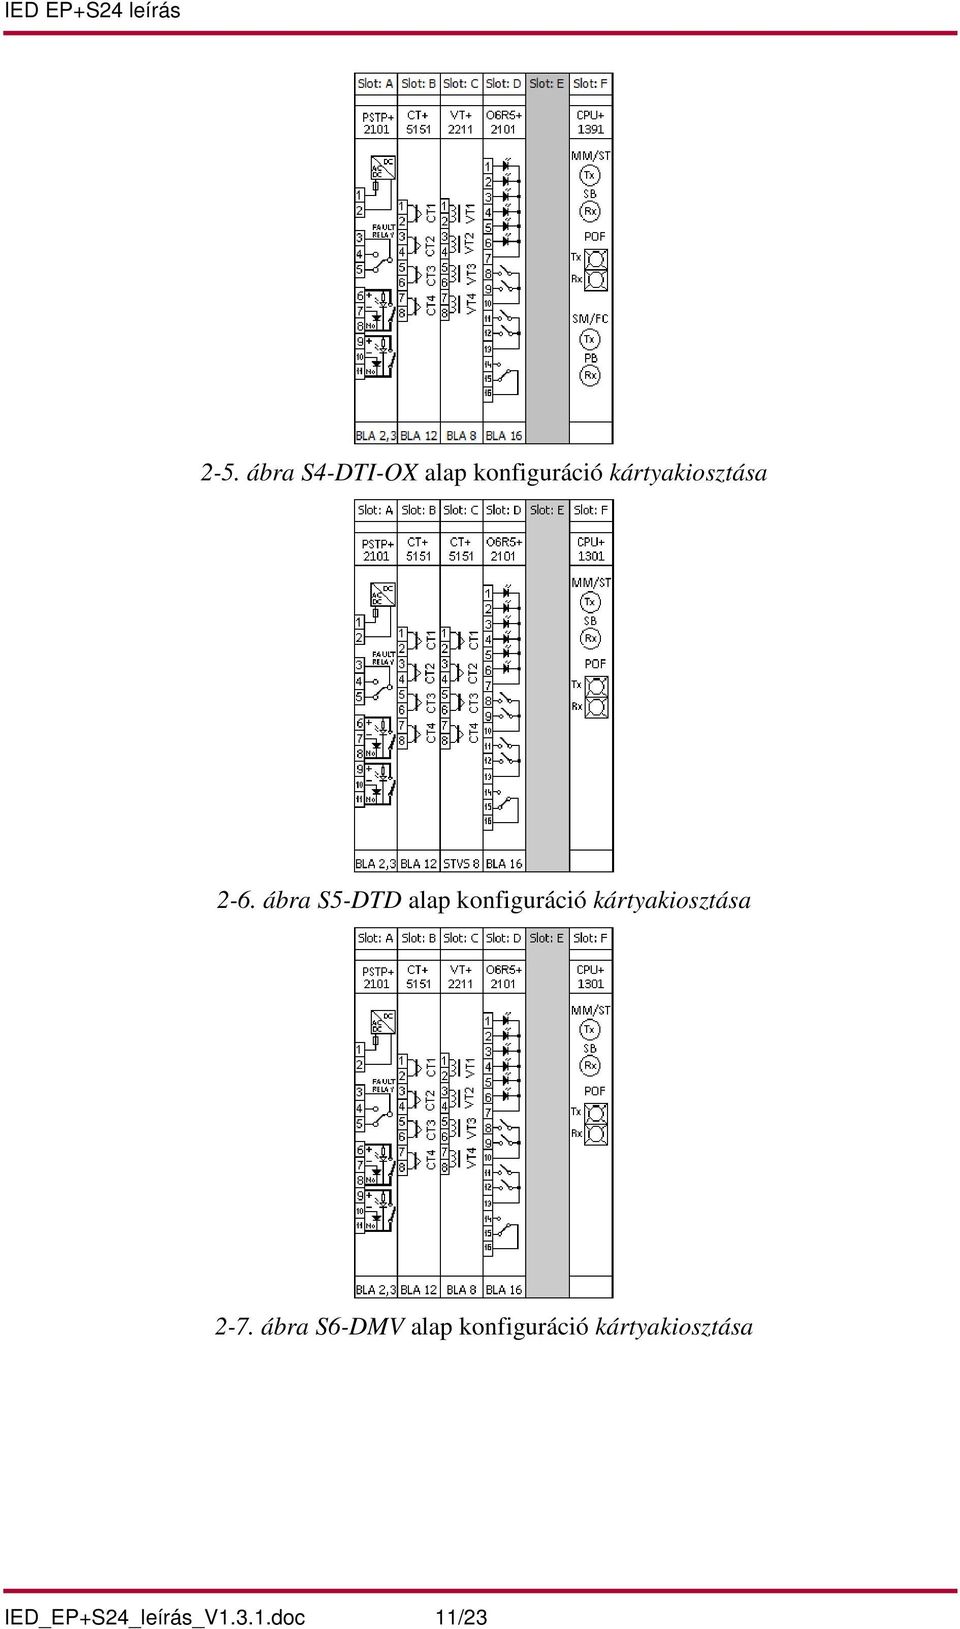 ábra S5-DTD alap konfiguráció kártyakiosztása